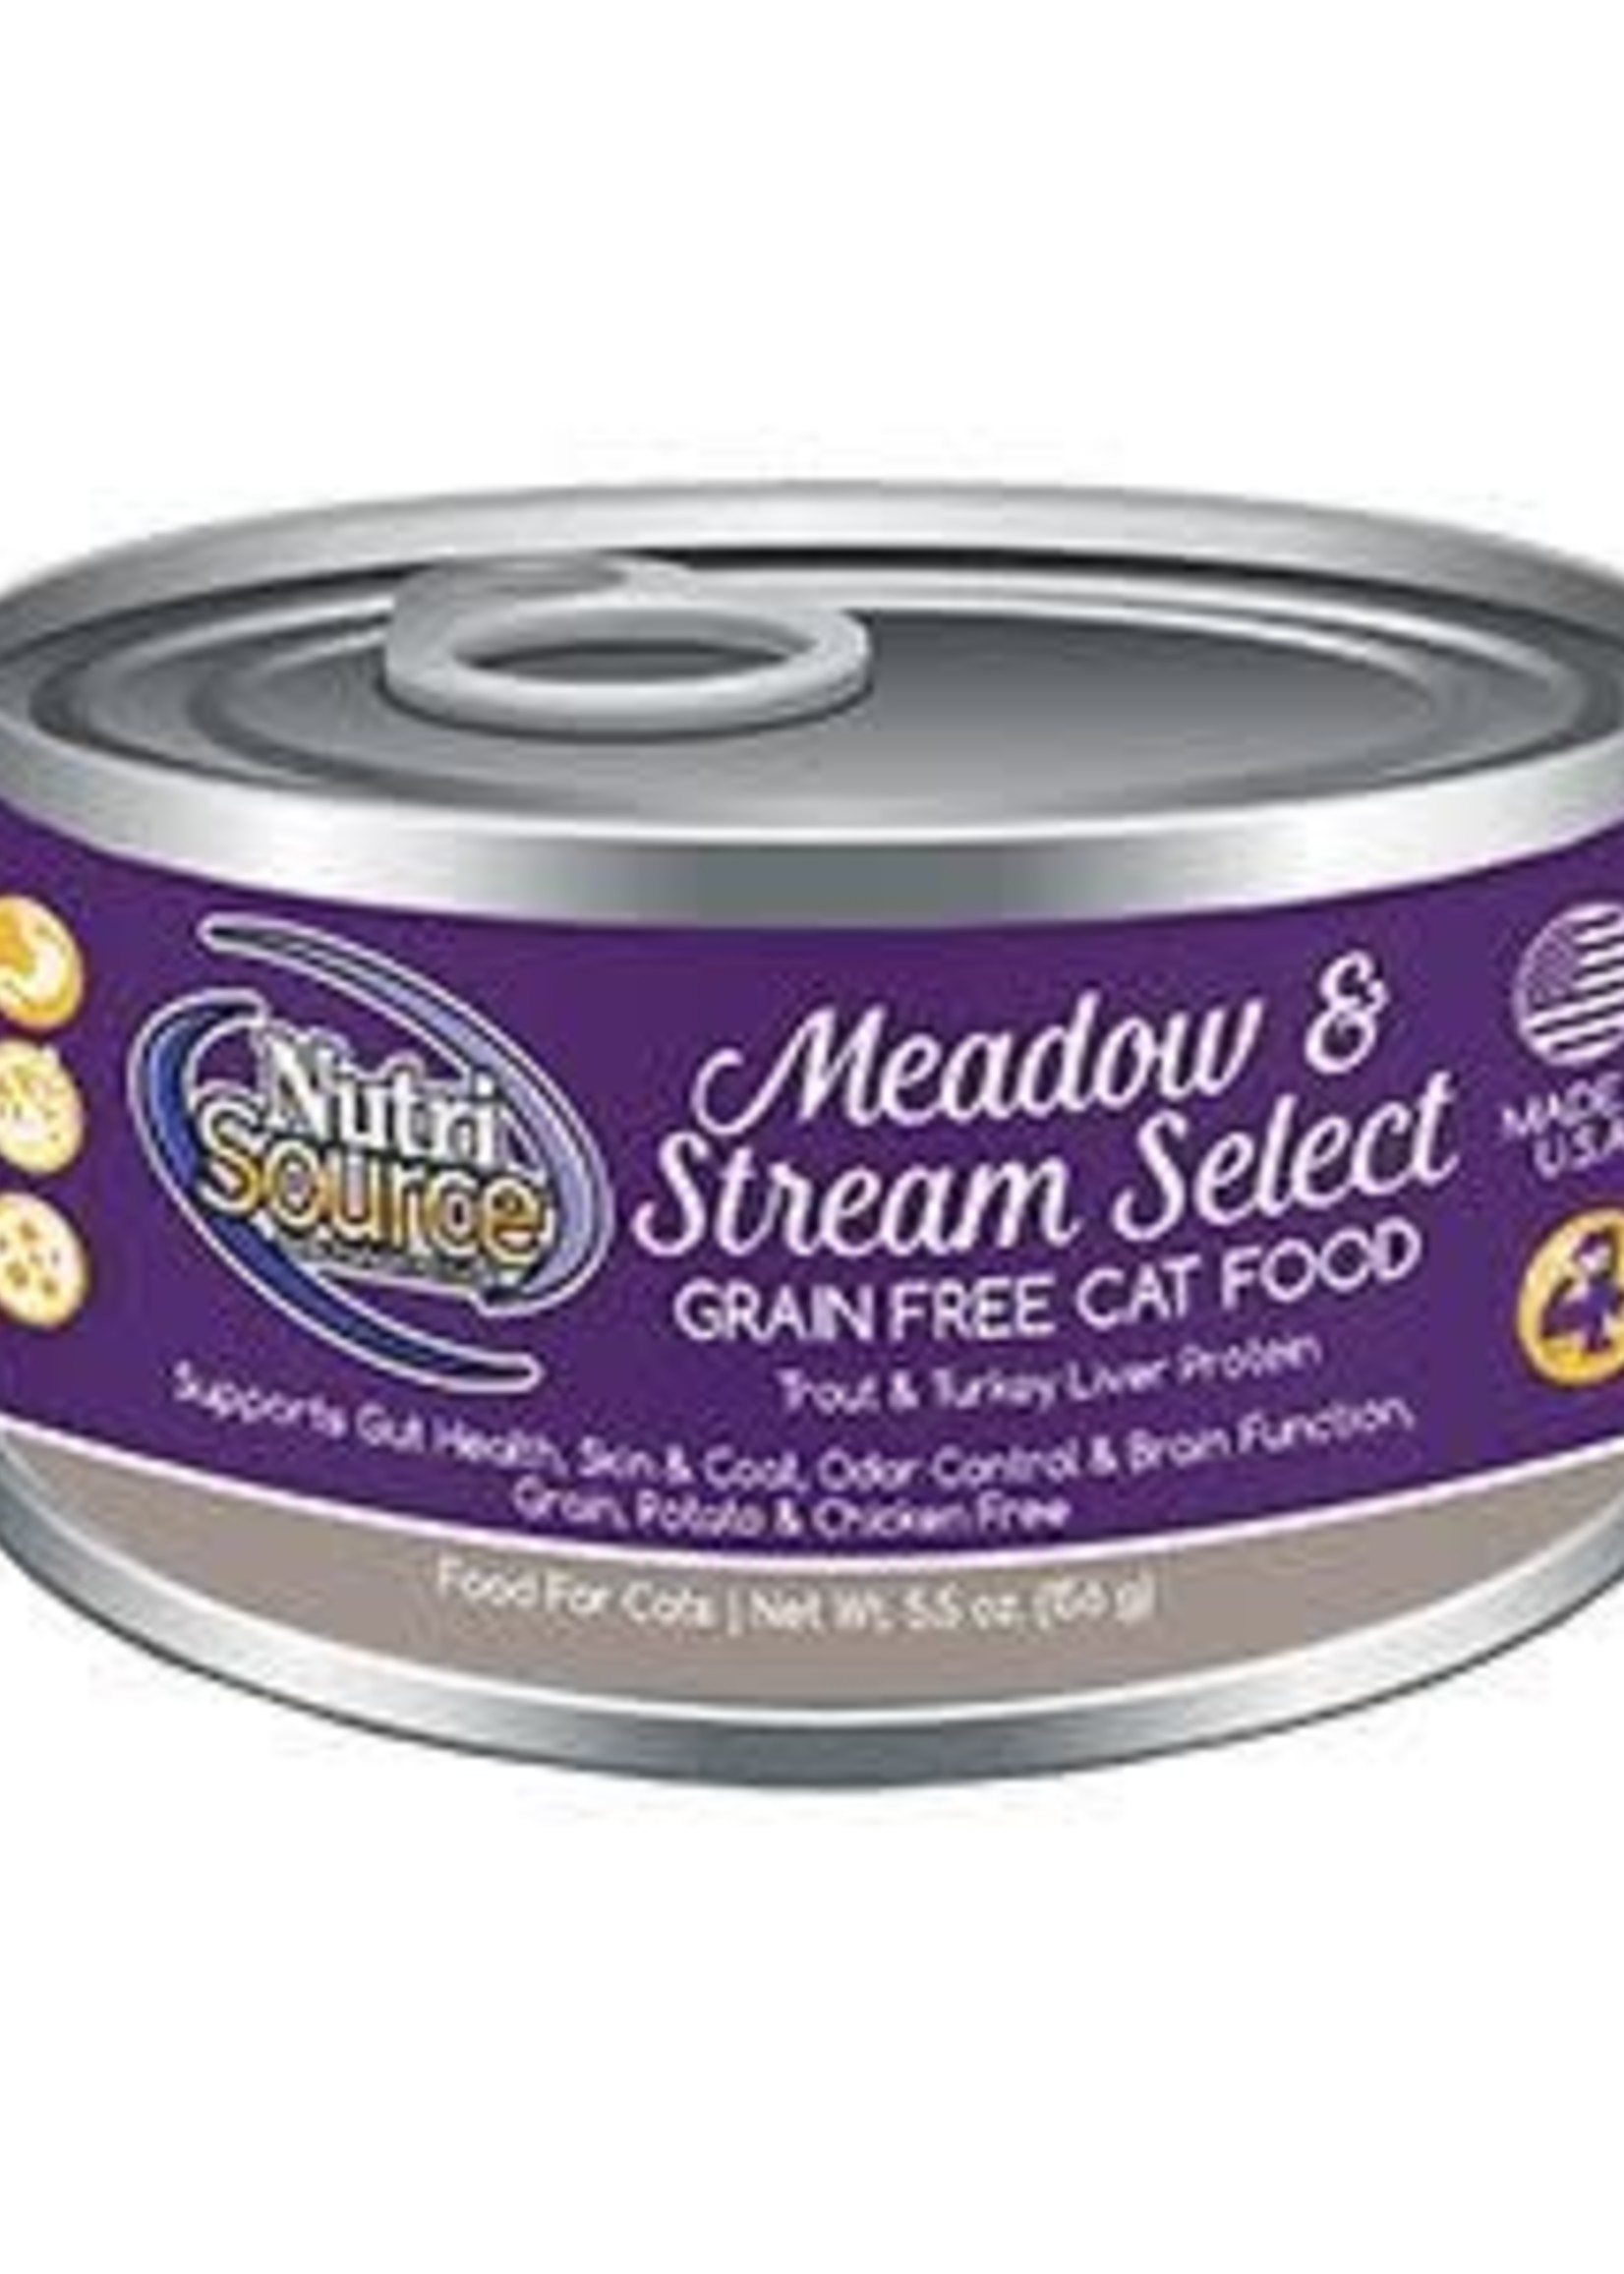 Nutrisource NutriSource Grain-Free Meadow & Stream Select Wet Cat Food 5.5oz